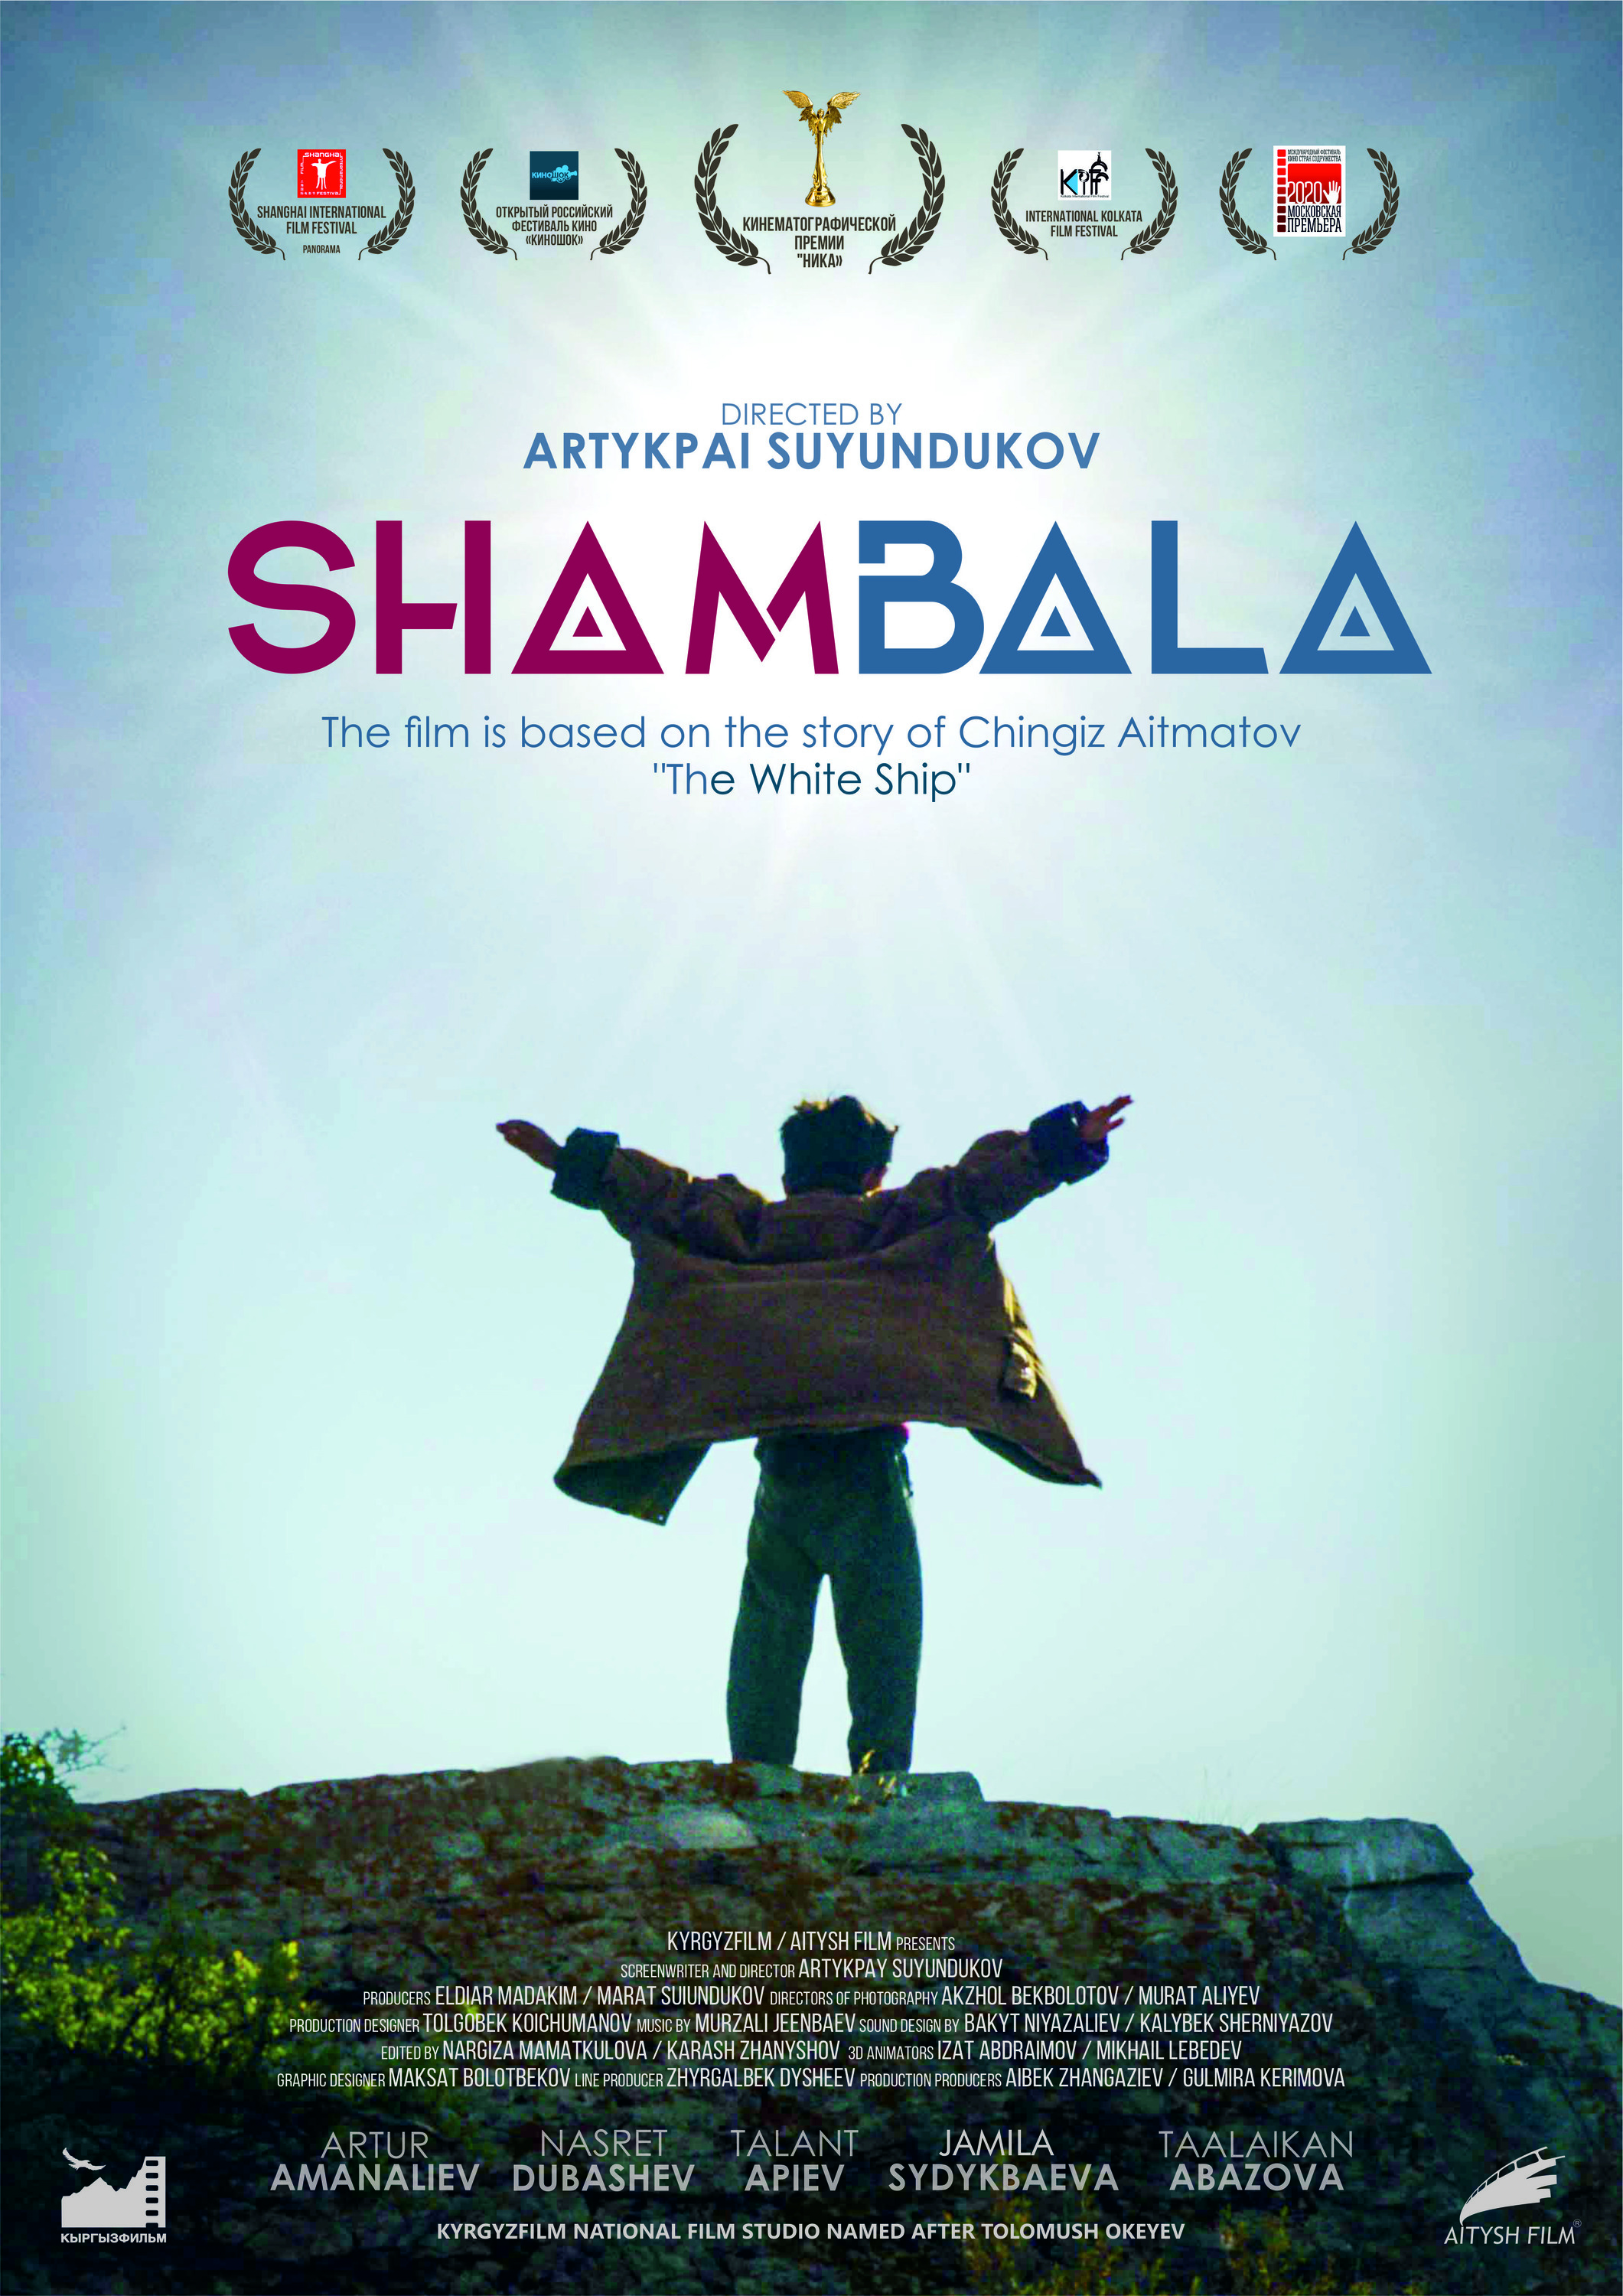 Mega Sized Movie Poster Image for Shambala 